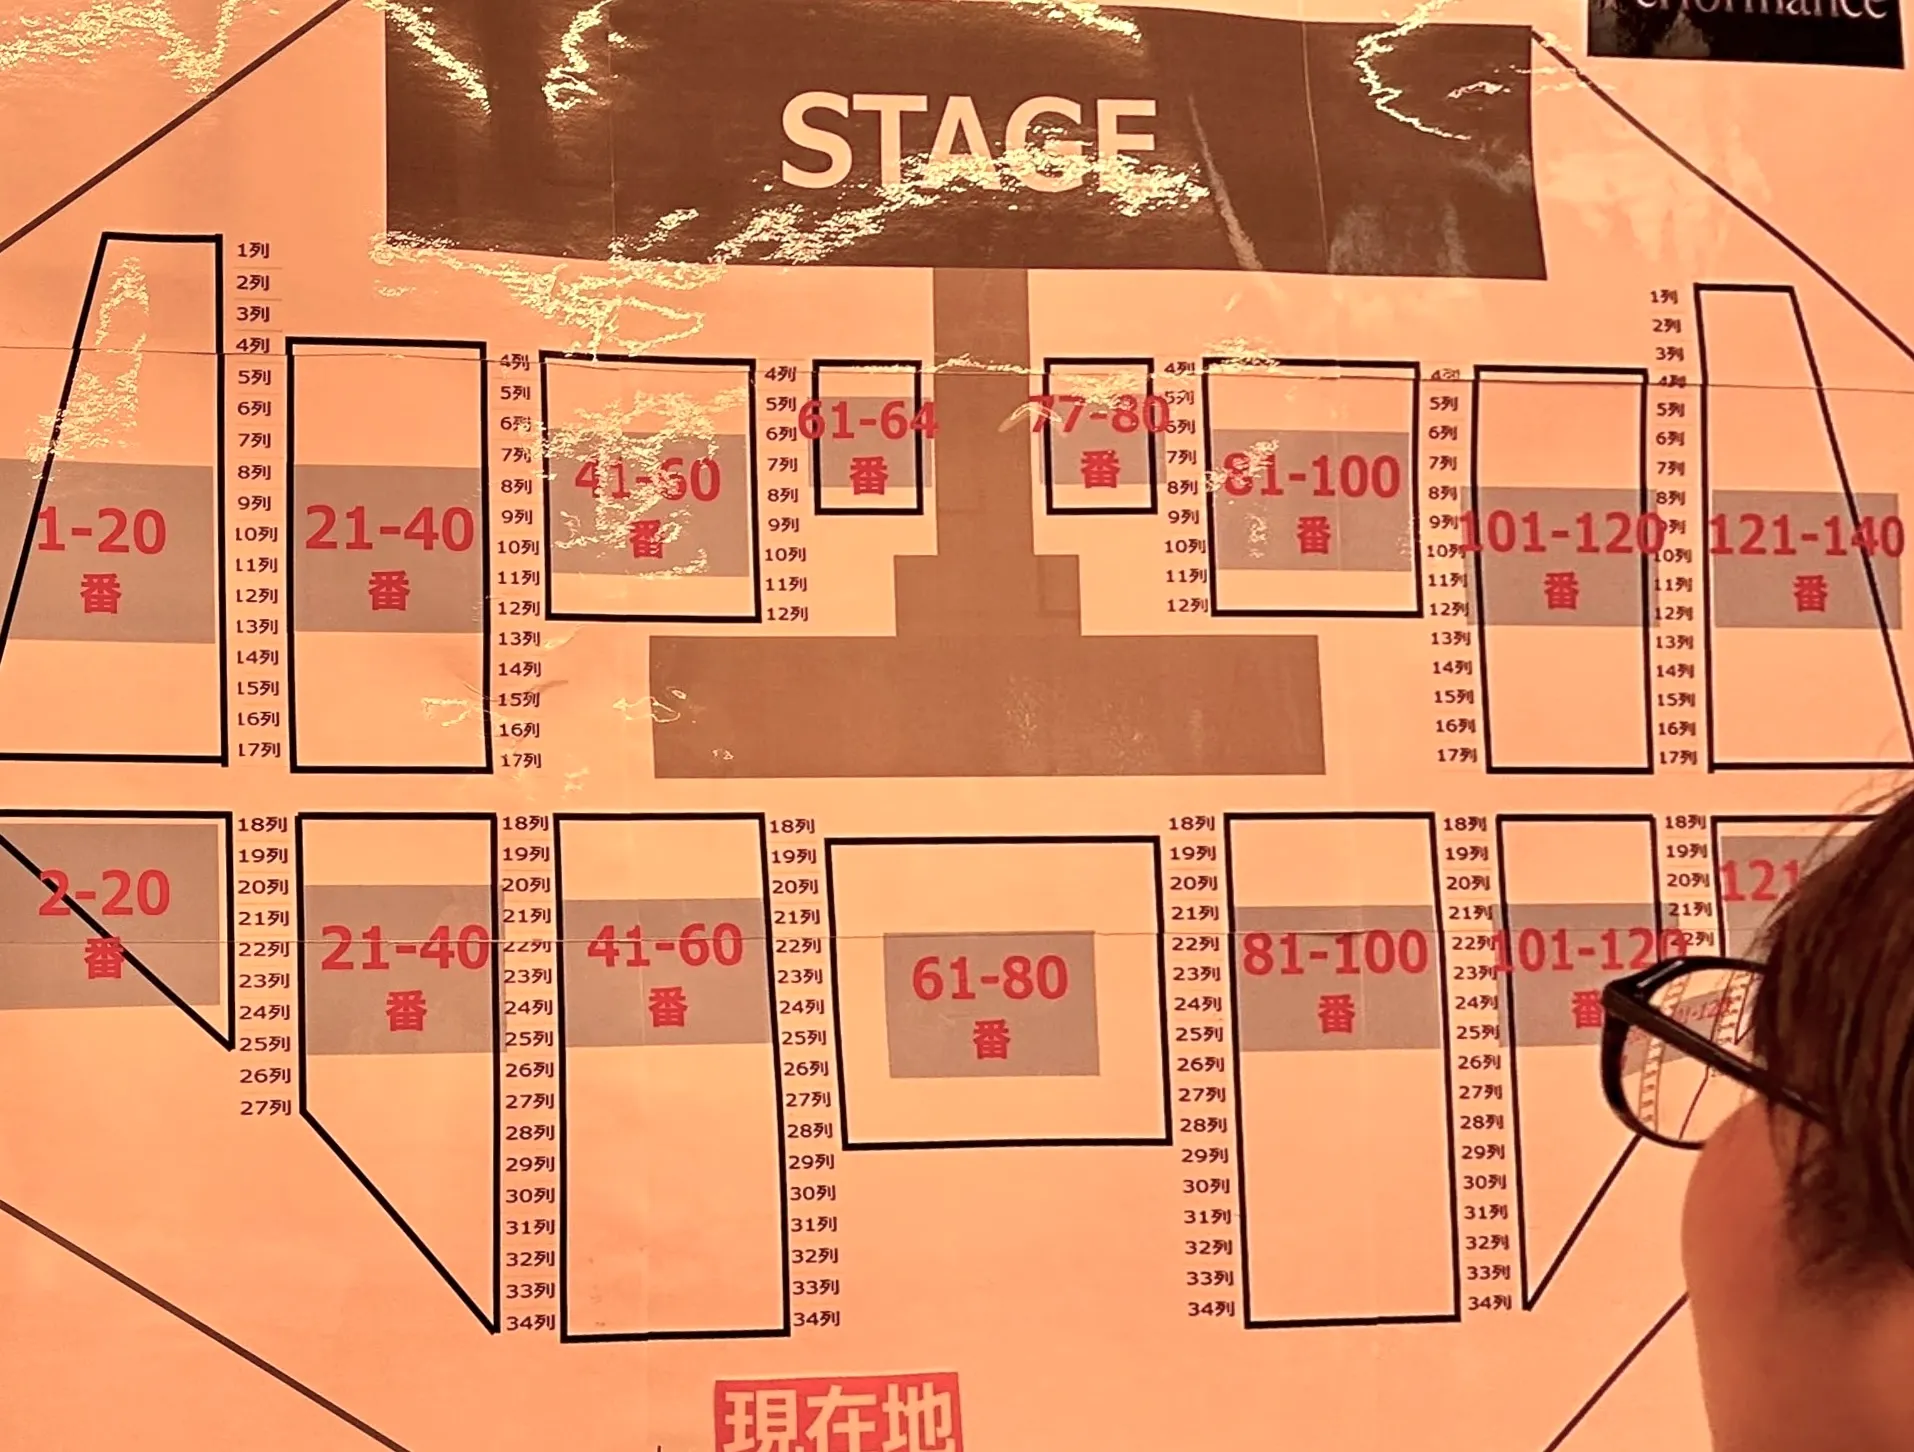 The Performance Kアリーナ横浜の座席表